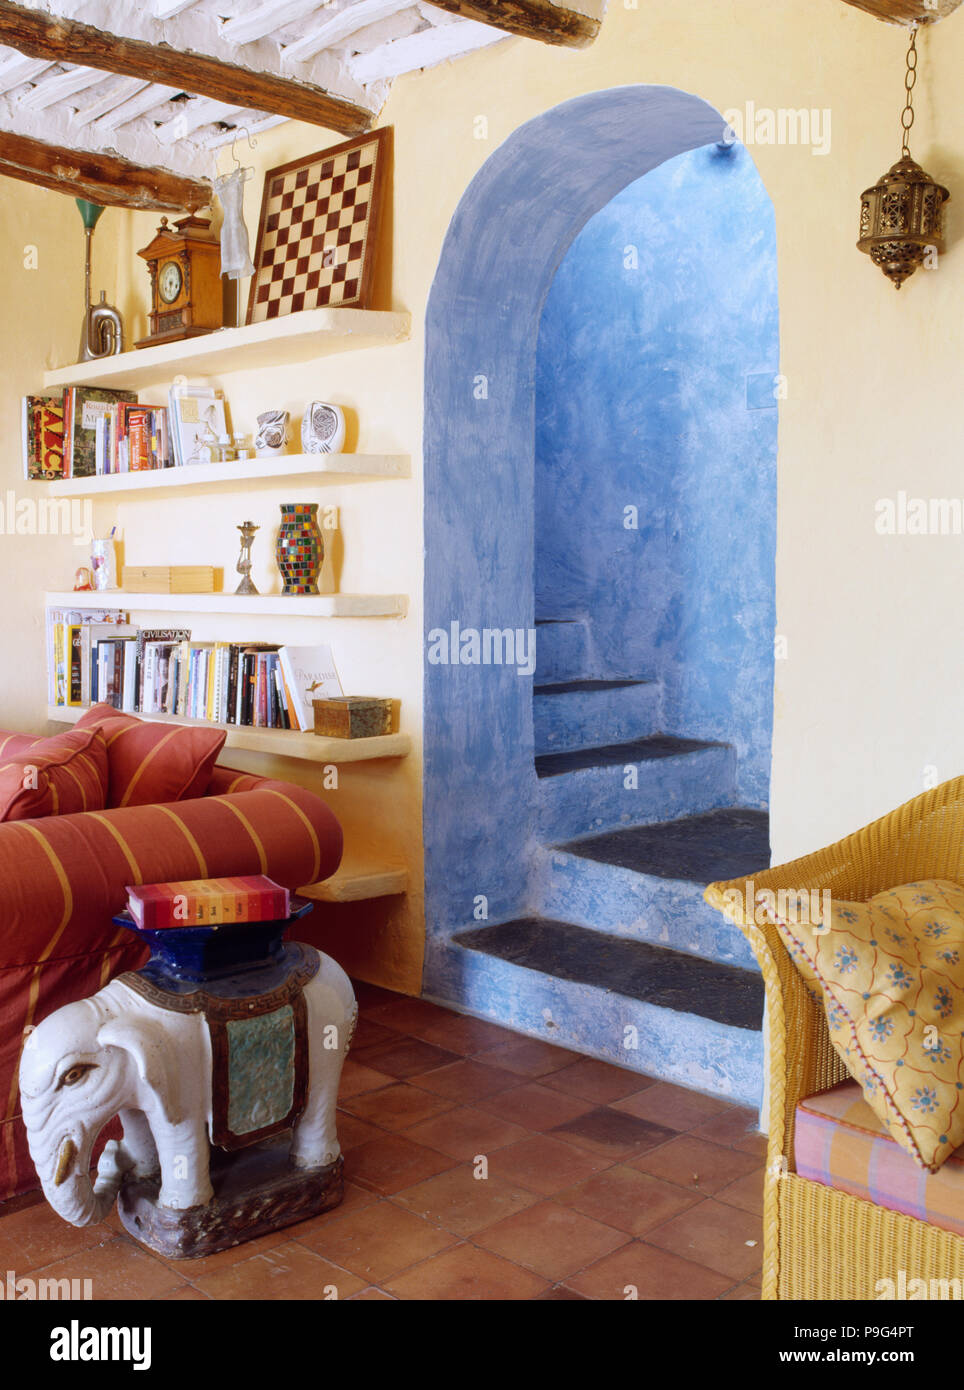 Keramik Elefant Tisch neben Sofa in Spanisch Land leben mit Torbogen mit blauen Wänden auf Treppe Stockfoto